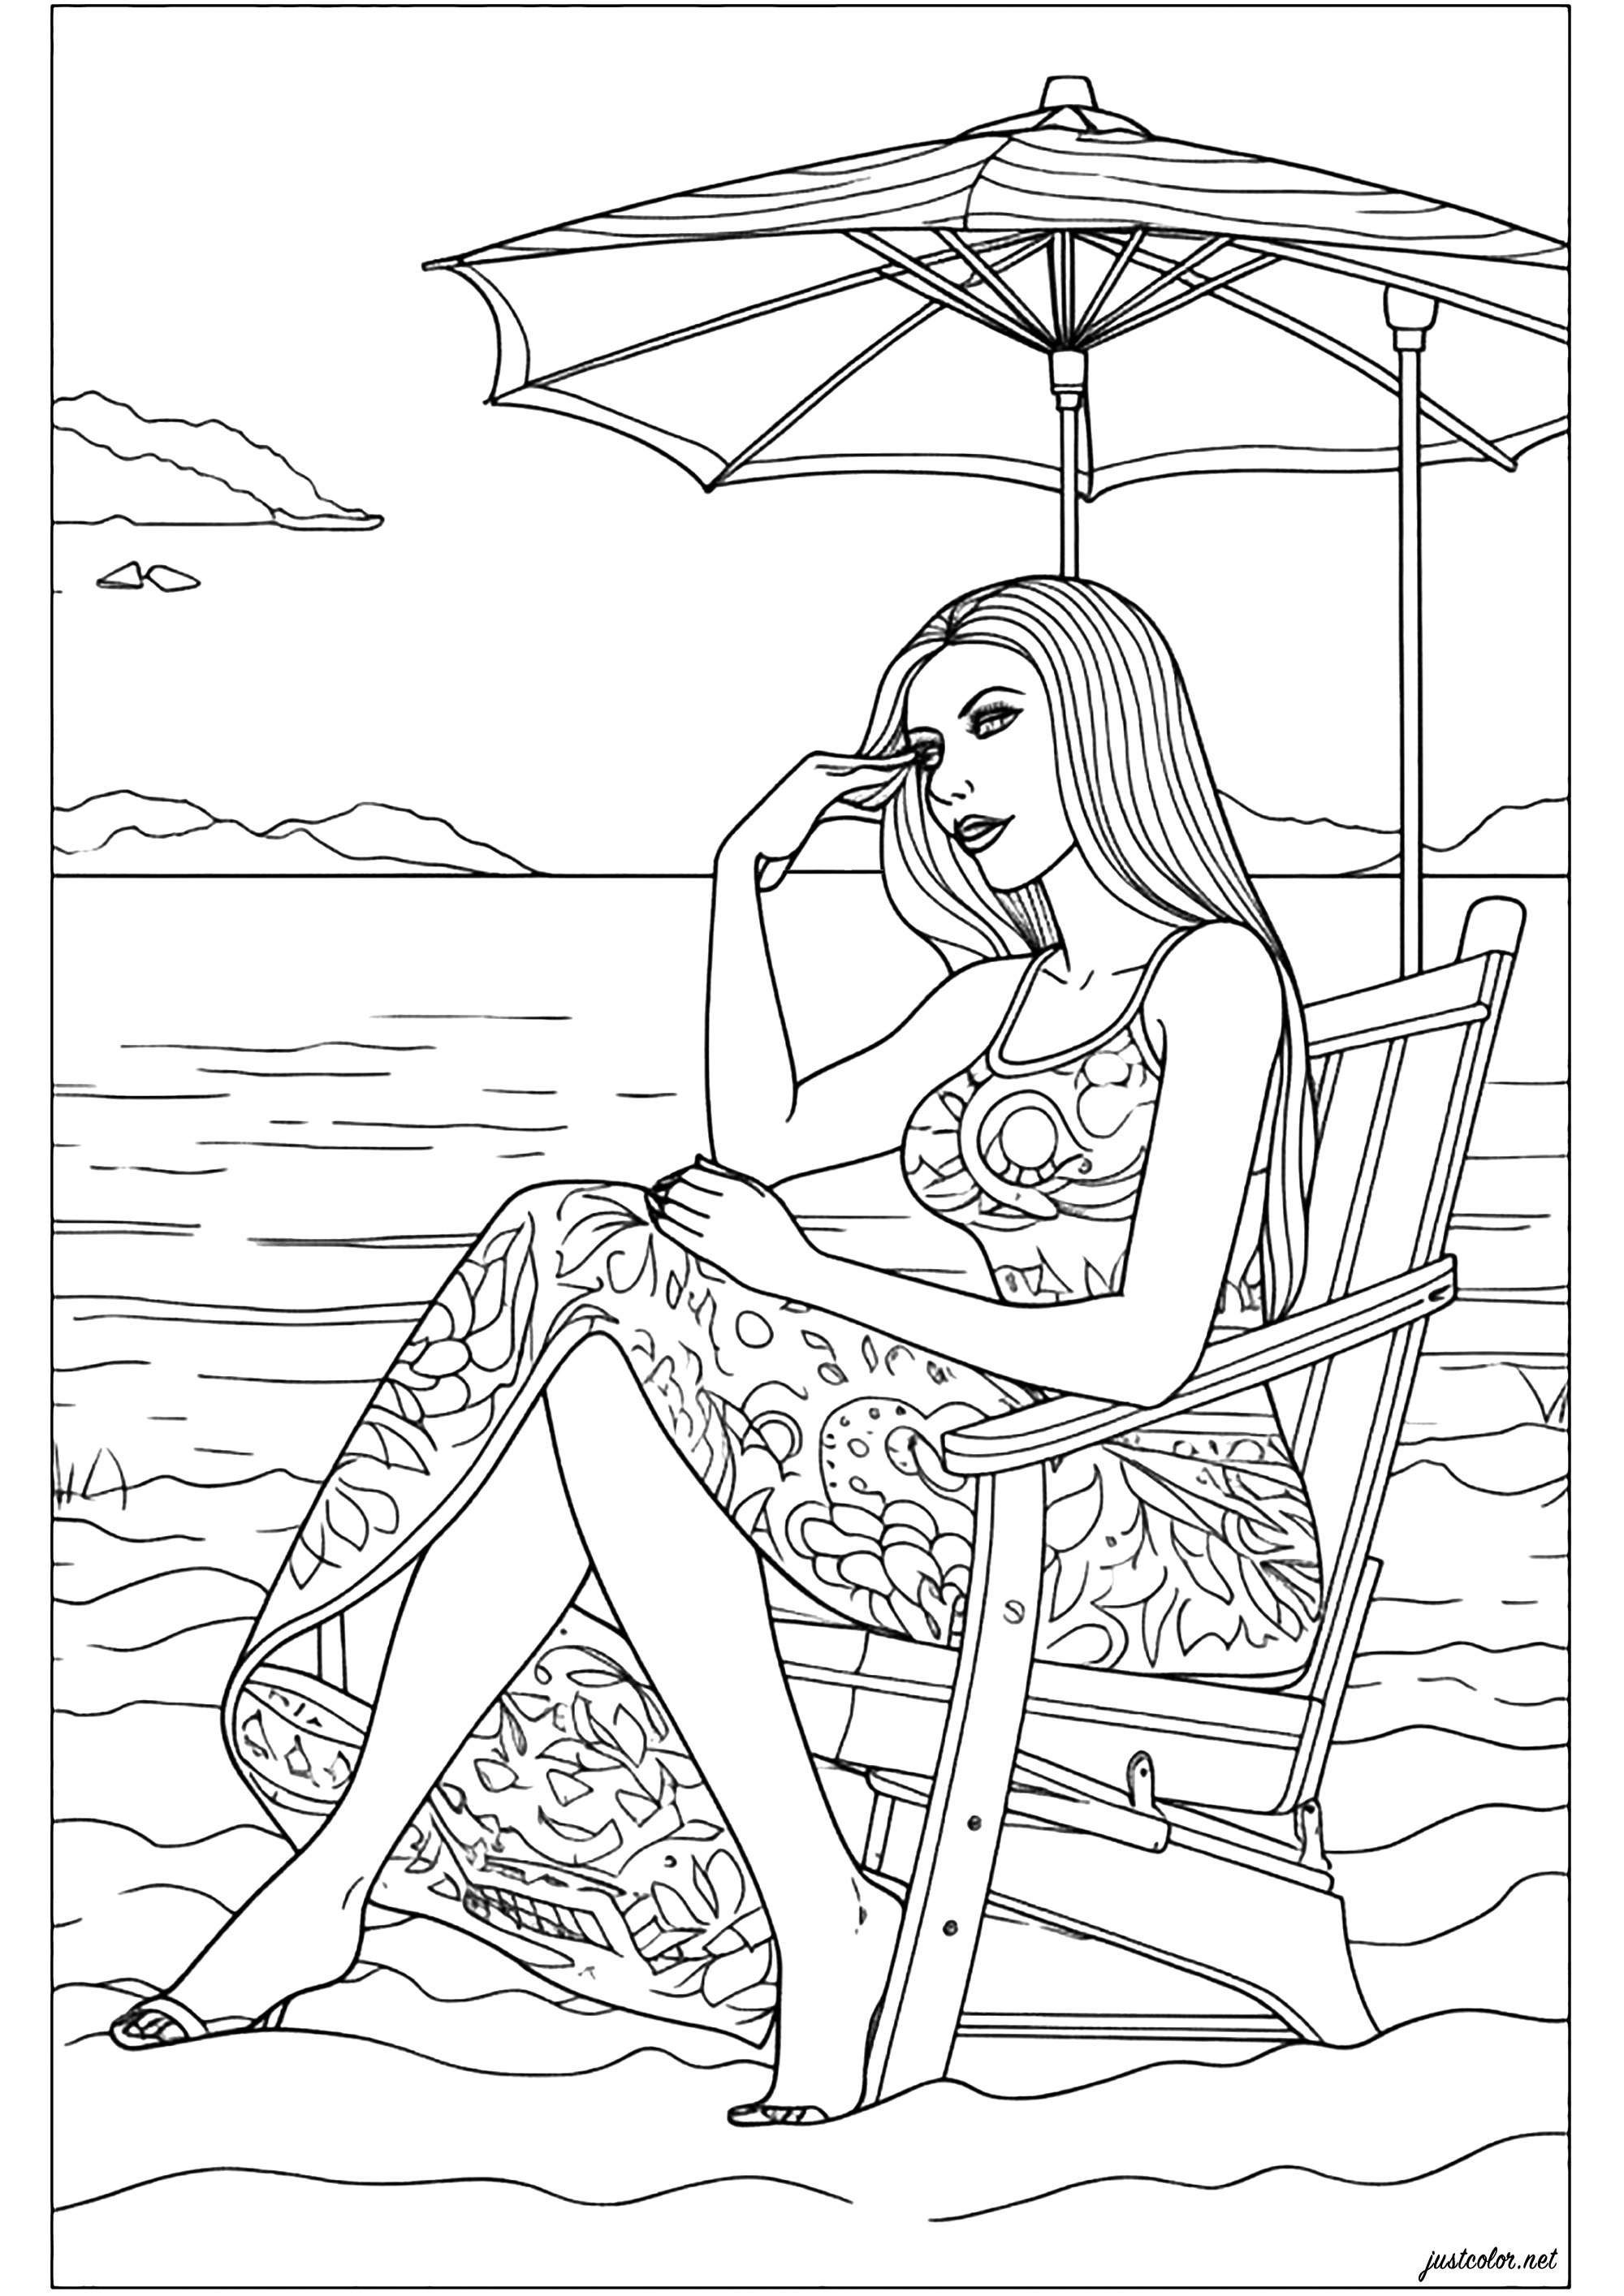 Femme assise a la plage, élégante et songeuse. Un coloriage original qui vous donnera envie de partir en vacances, sur une plage calme, juste à écouter le bruit des vagues ...